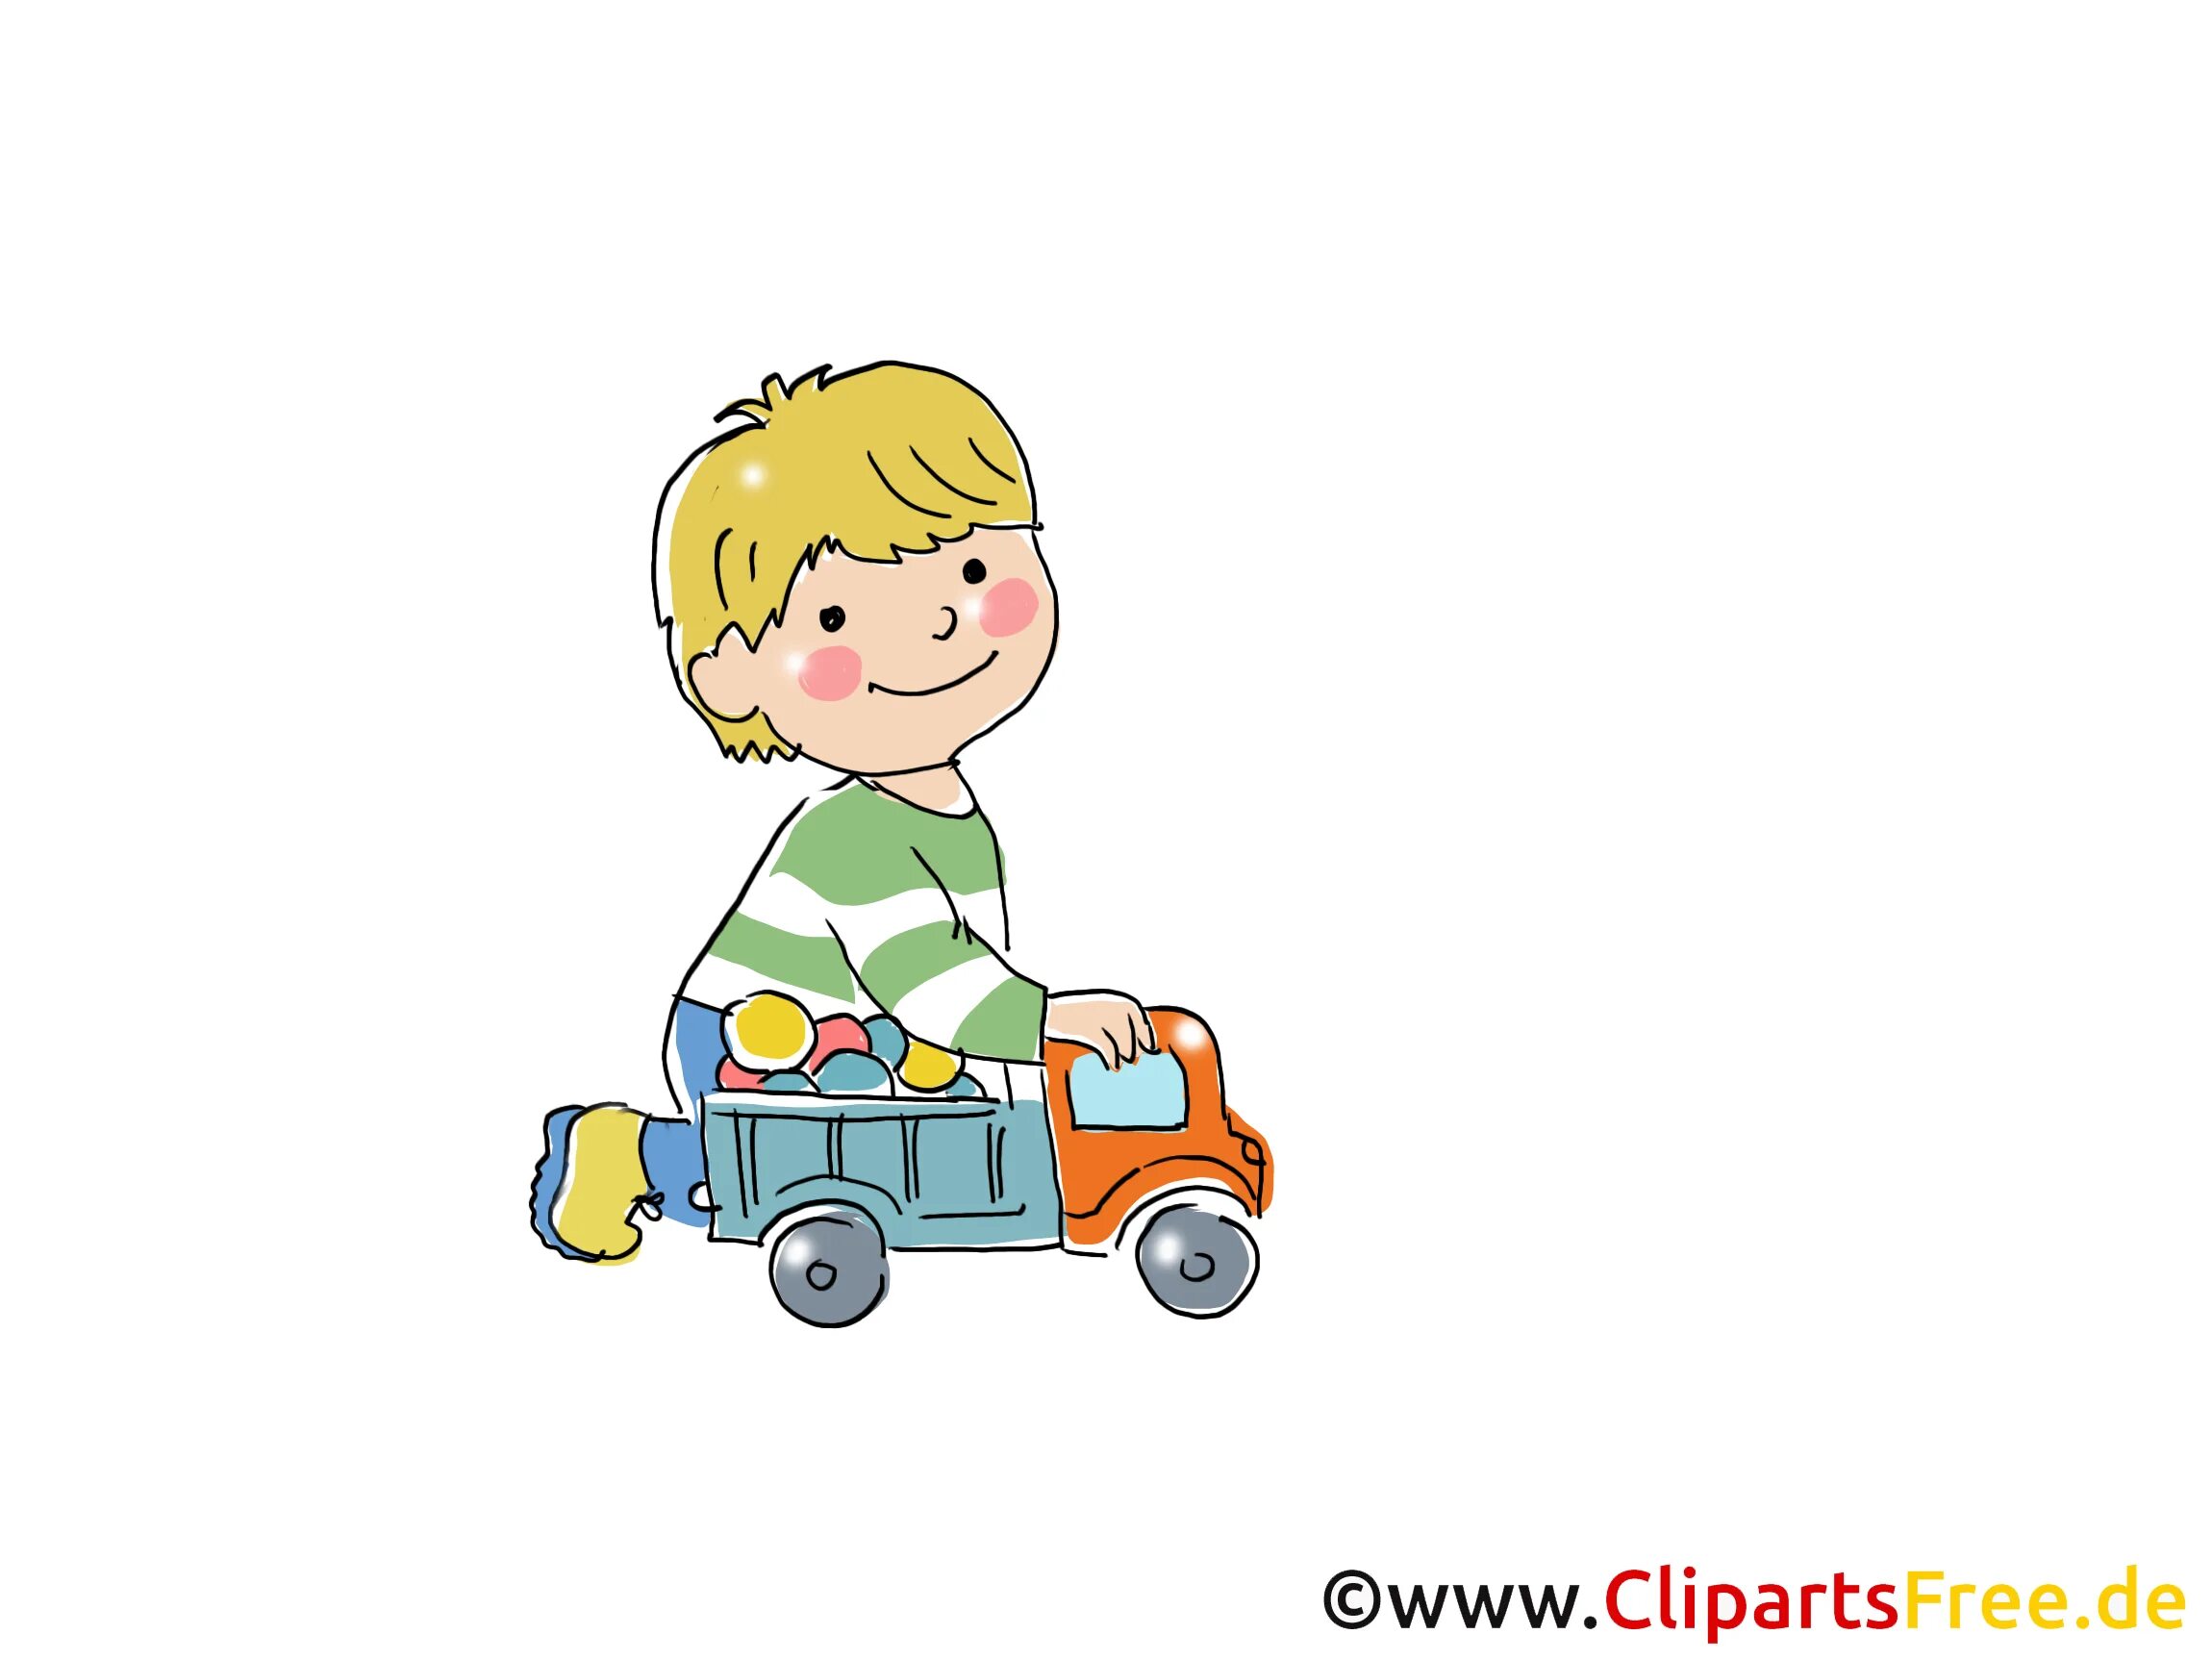 Машинки для мальчиков. Иллюстрация мальчик с машинкой. Изображение мальчика с машинкой для детей. Рисунки машинки для мальчиков.